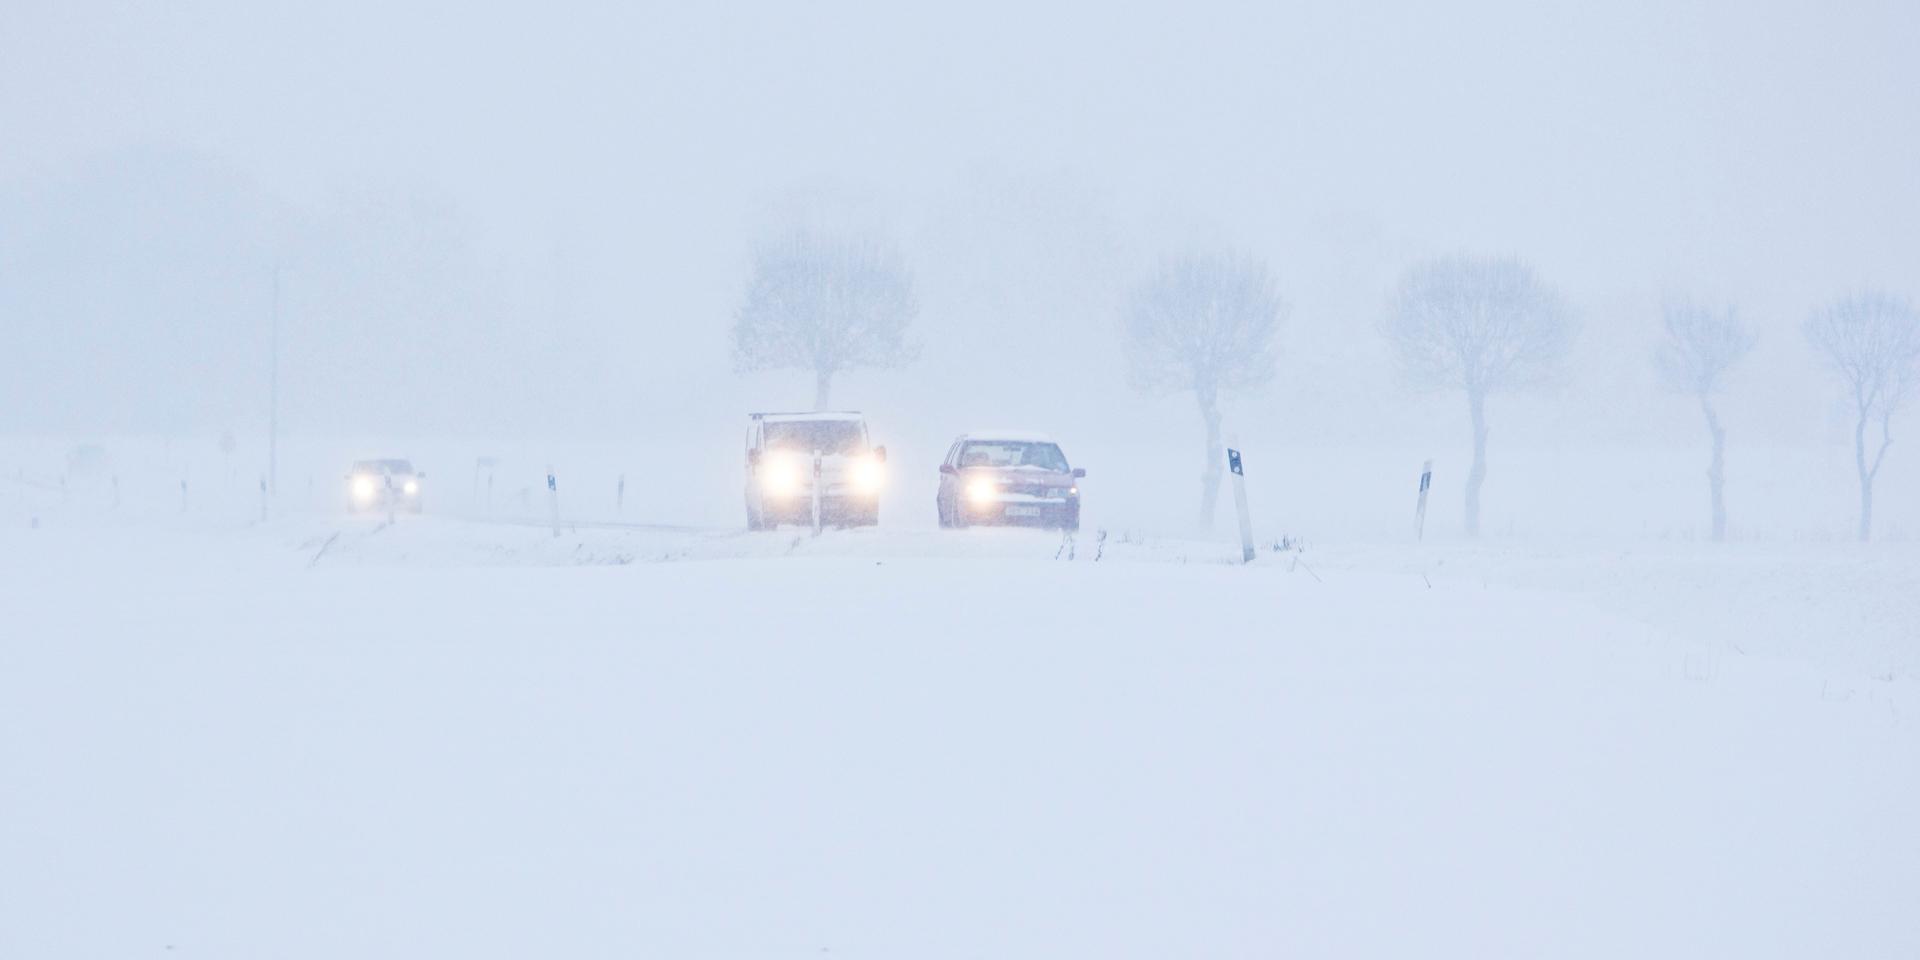 Hemtjänsten behöver bilar som klarar snöoväder, skriver insändarskribenten.